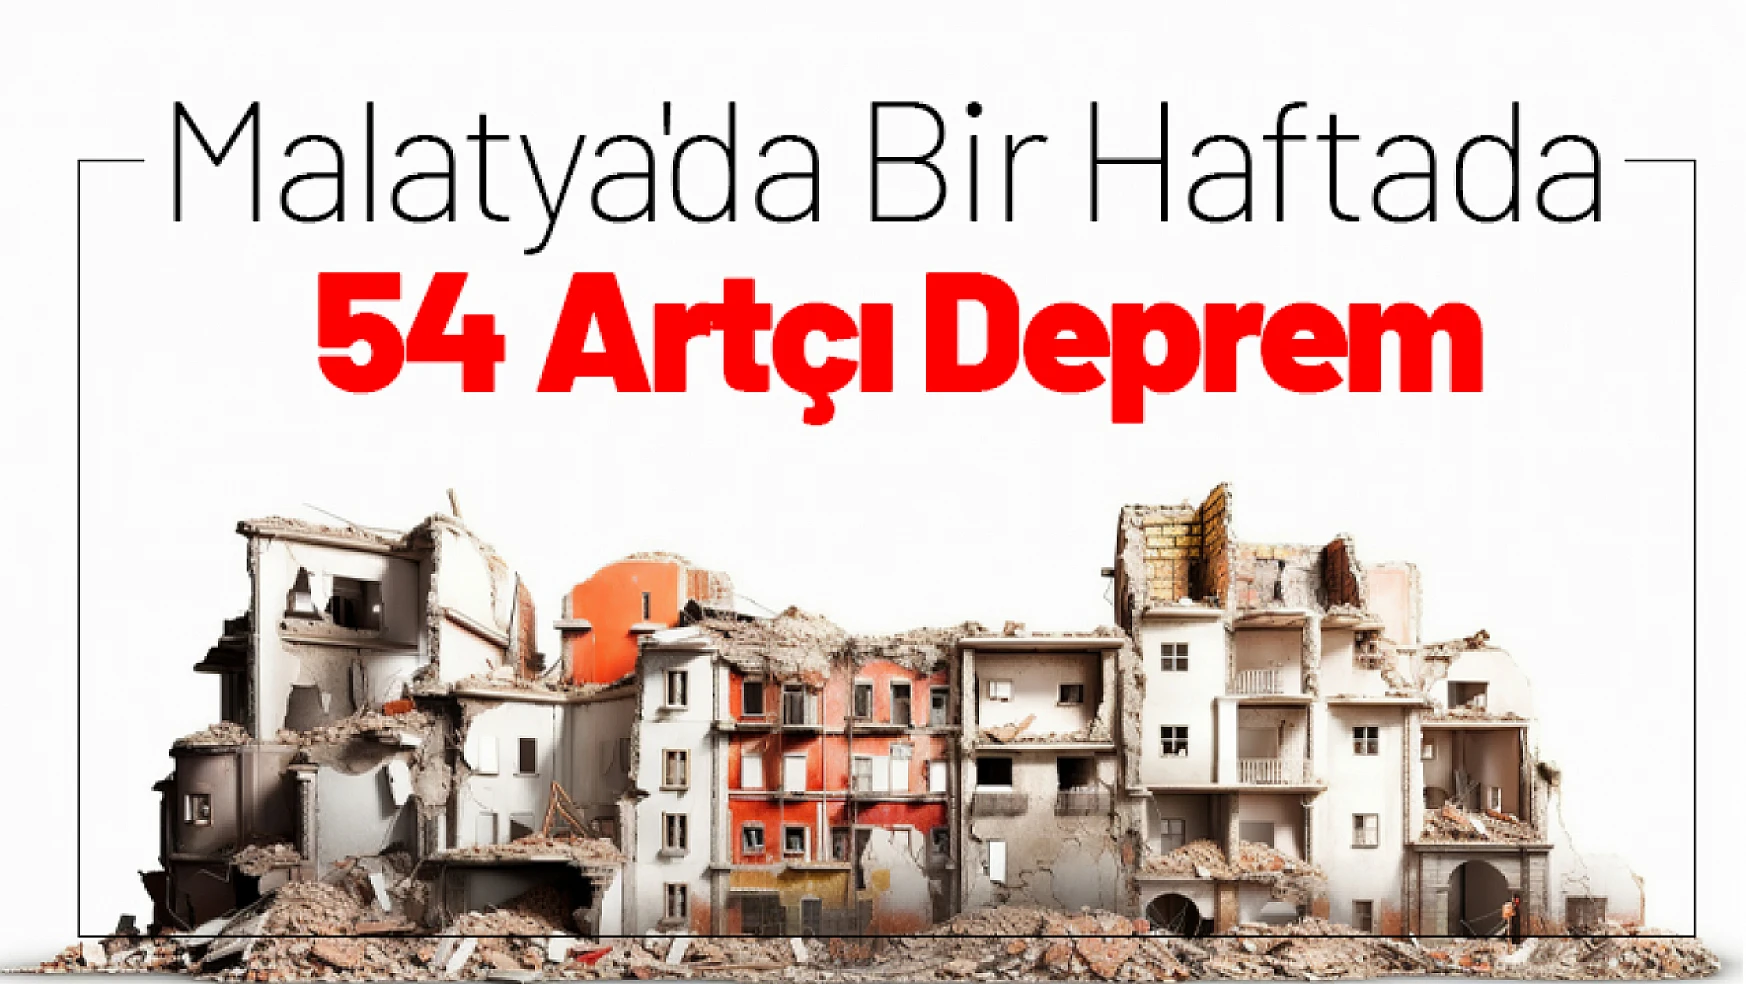 Malatya'da Bir Haftada 54 Artçı Deprem